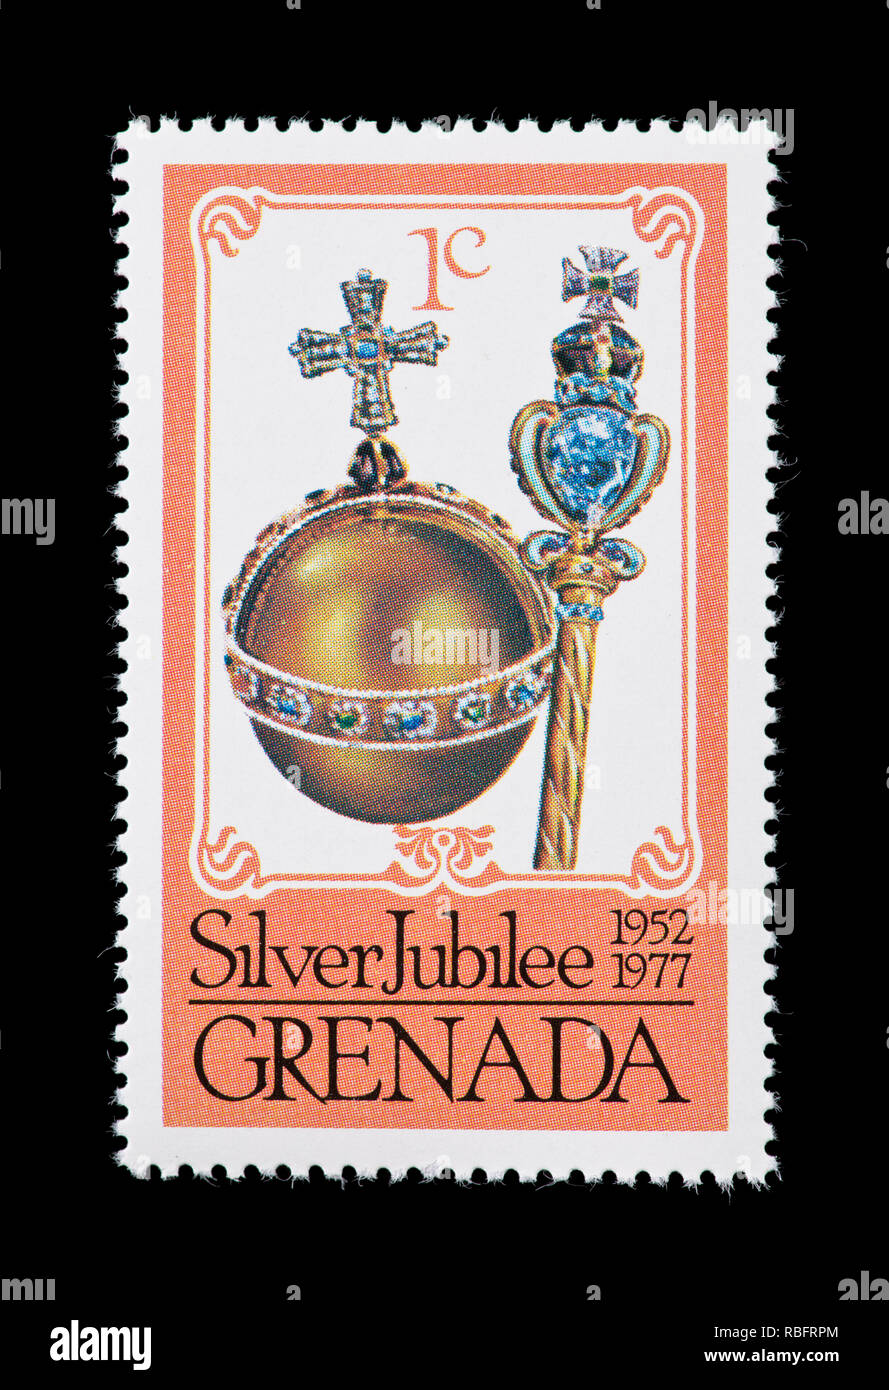 Briefmarke von Grenada Darstellung der reichsapfel und Zepter, herausgegeben für den 25. Jahrestag der Krönung von Königin Elizabeth II. Stockfoto